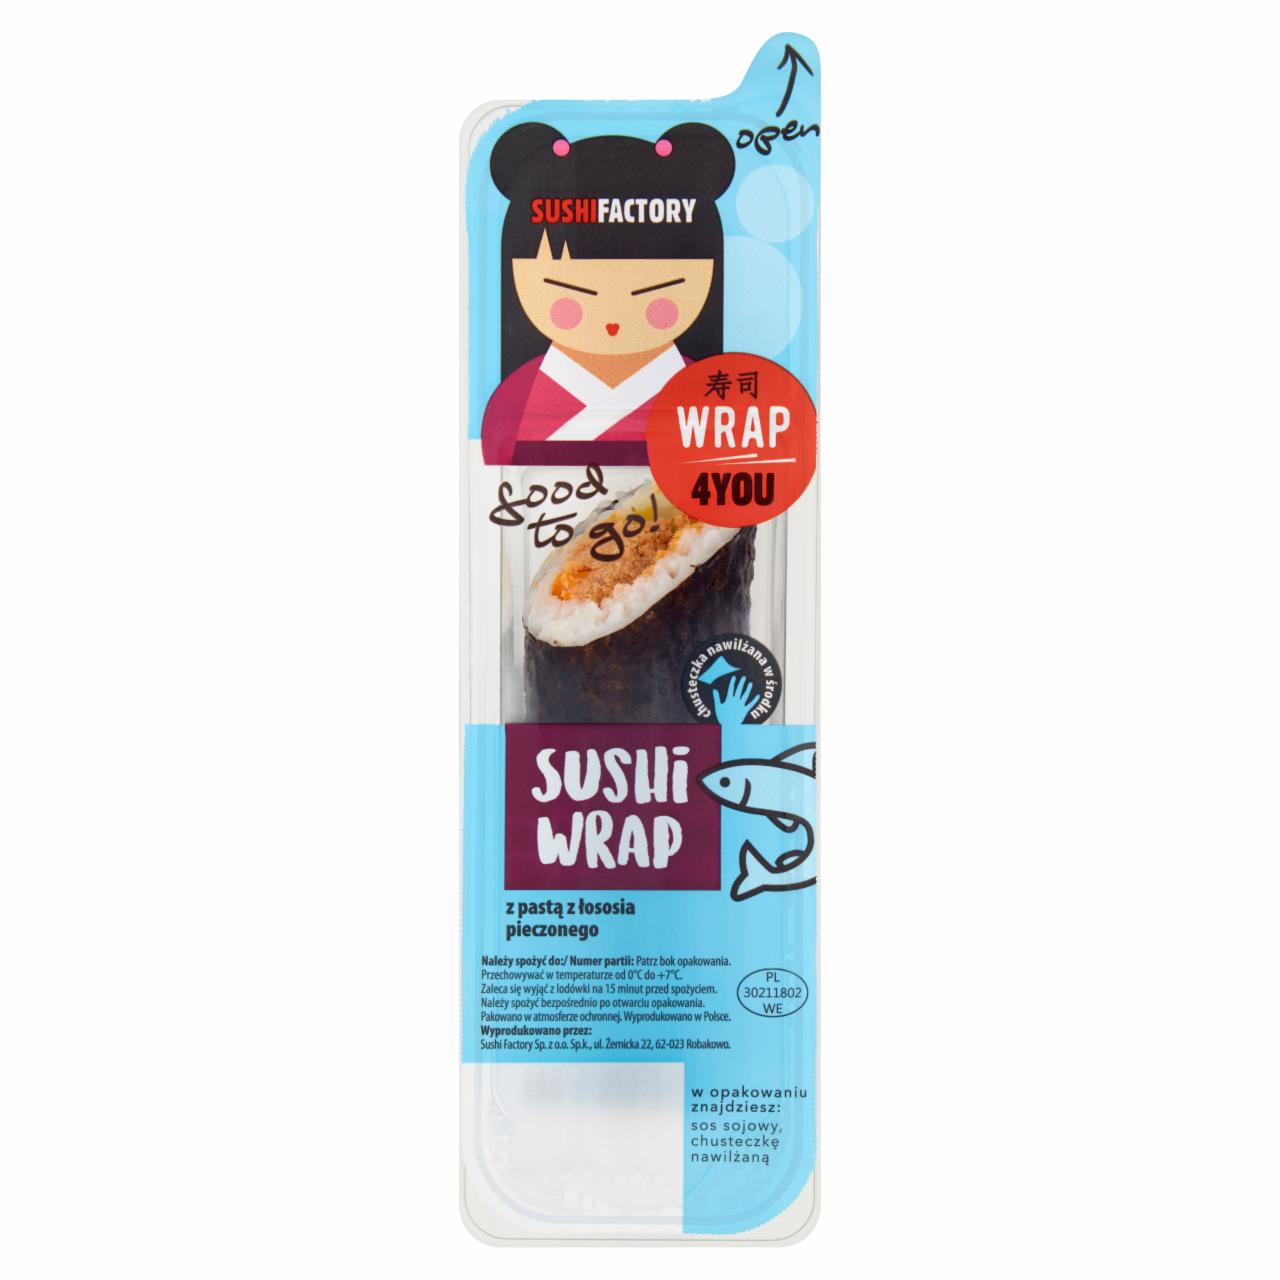 Zdjęcia - Wrap4You Sushi wrap z pastą z łososia pieczonego 150 g